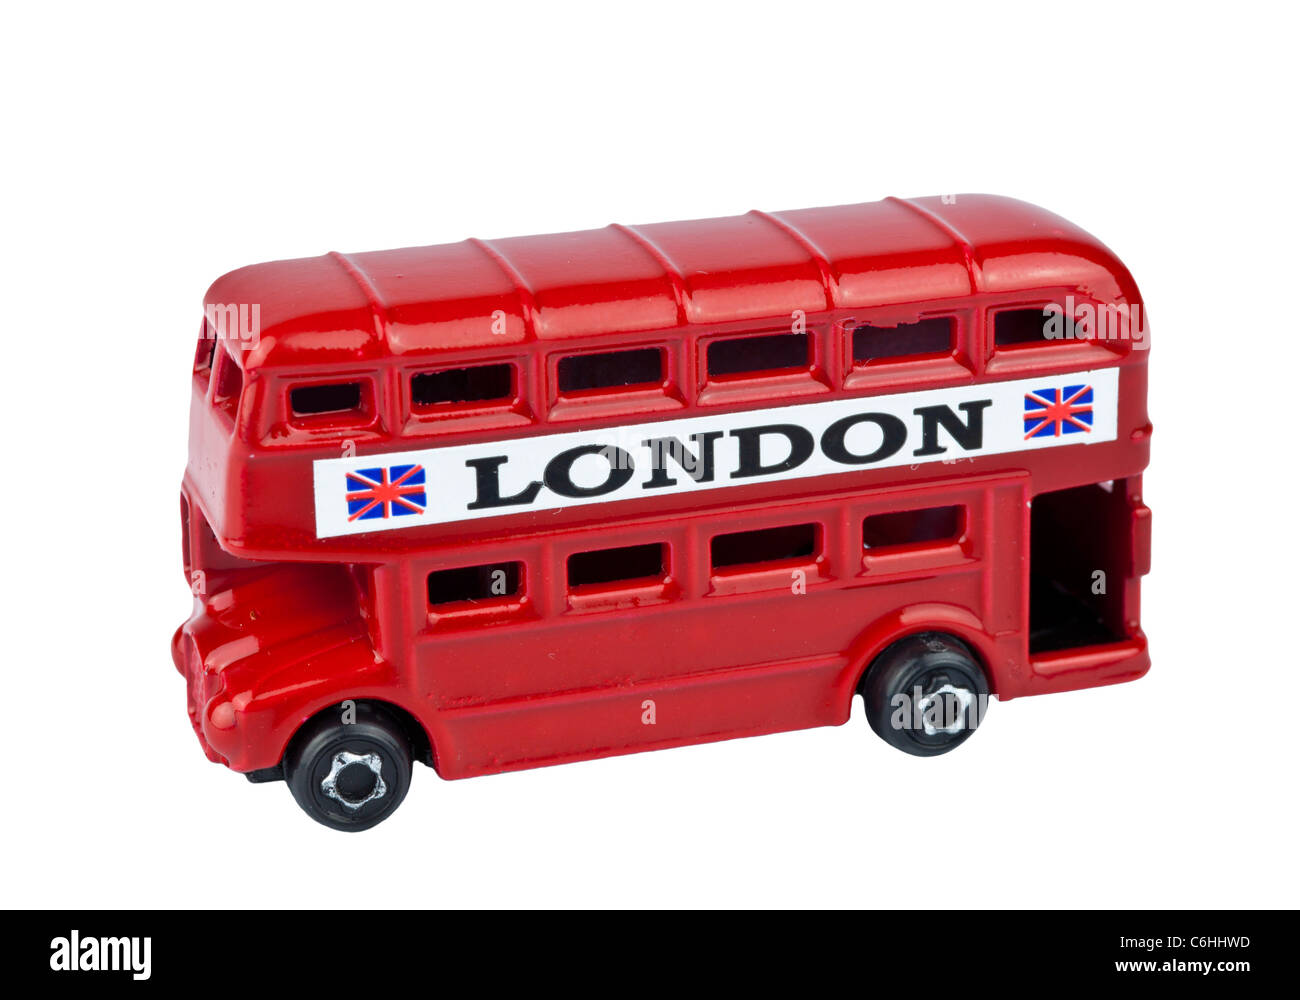 LONDON BUS ROUGE découpe jouet sur fond blanc Banque D'Images